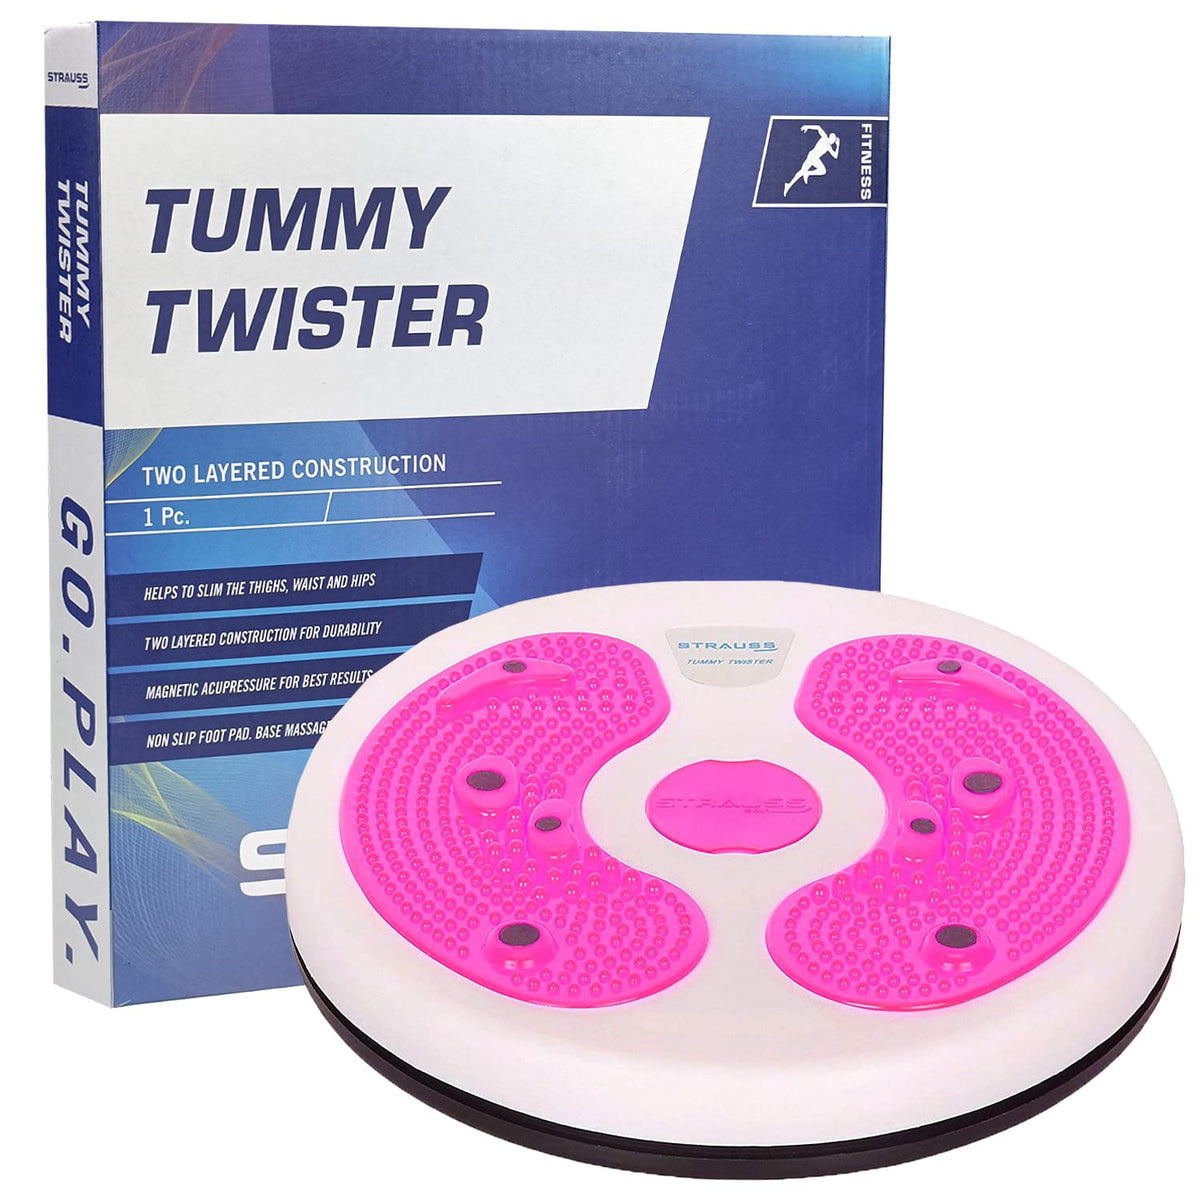 STRAUSS Tummy Twister, (White/Pink)